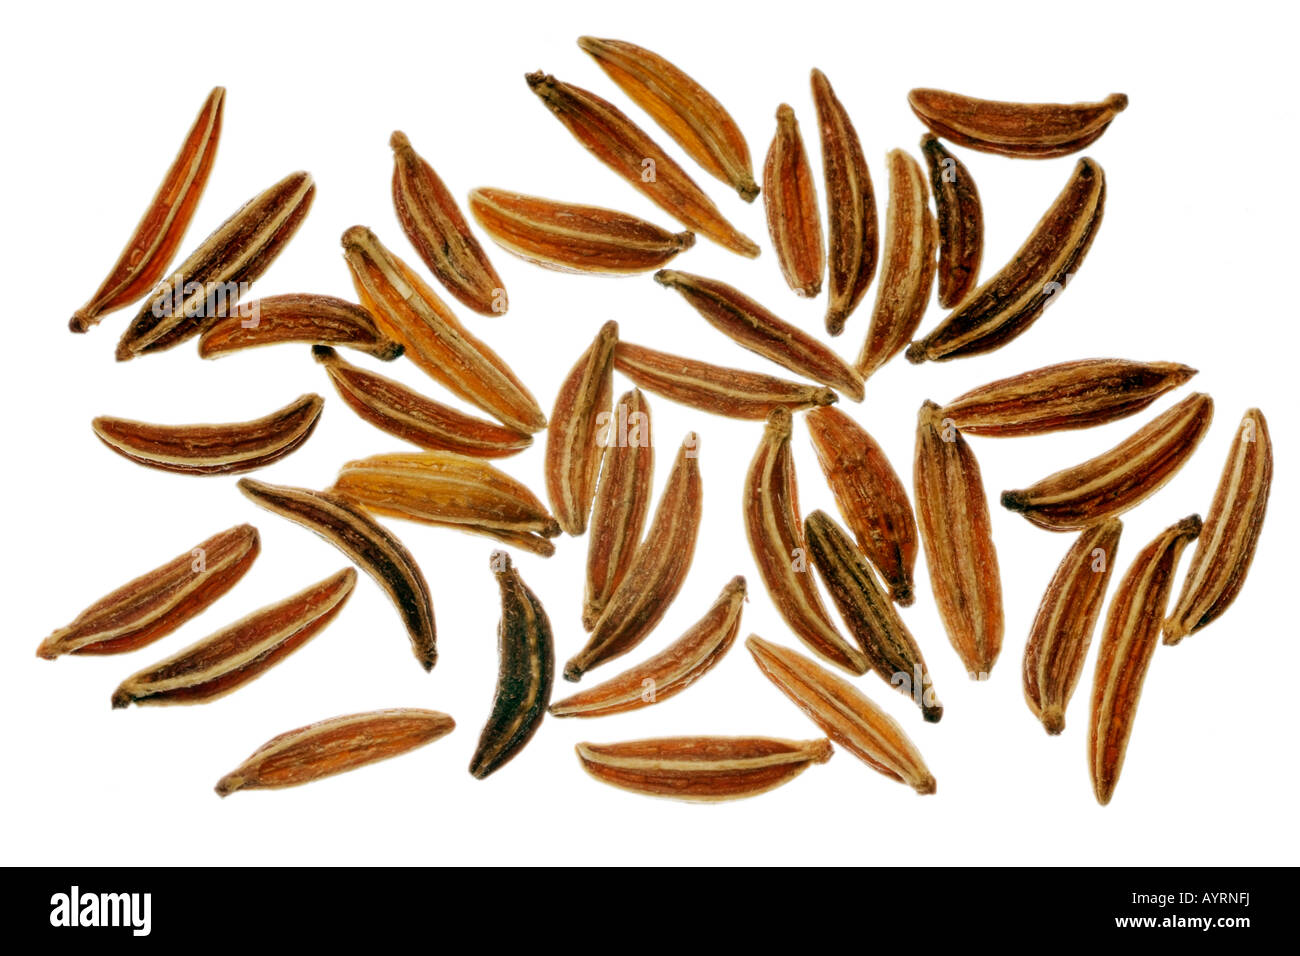 Les graines de carvi (Carum carvi), détail Banque D'Images